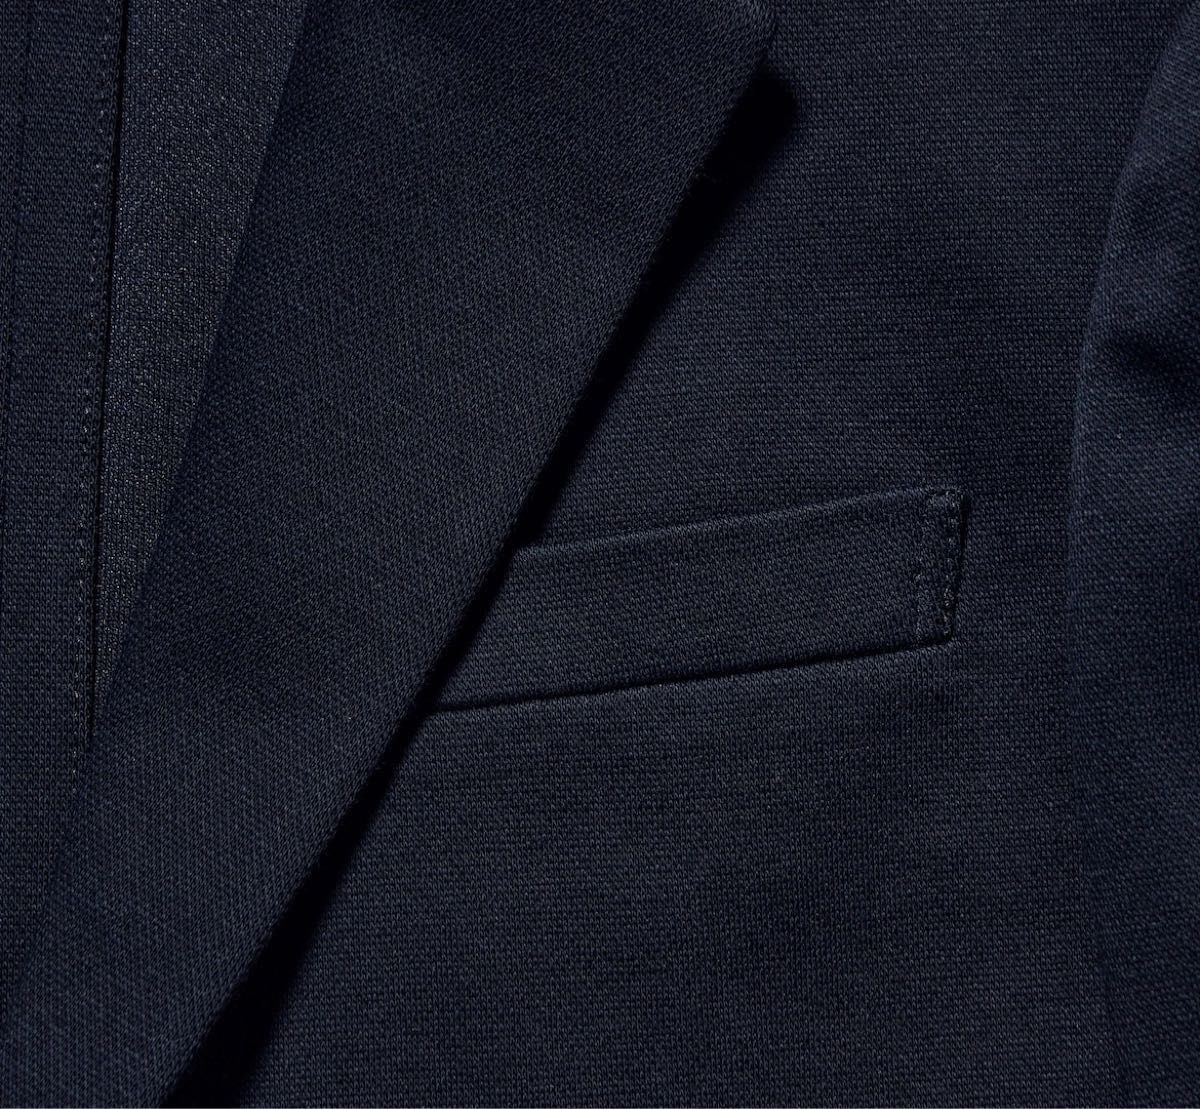 ユニクロ テーラードジャケット ボトムス ネイビー UNIQLO フォーマル セットアップ 160センチ ボーイズ 男の子 スーツ